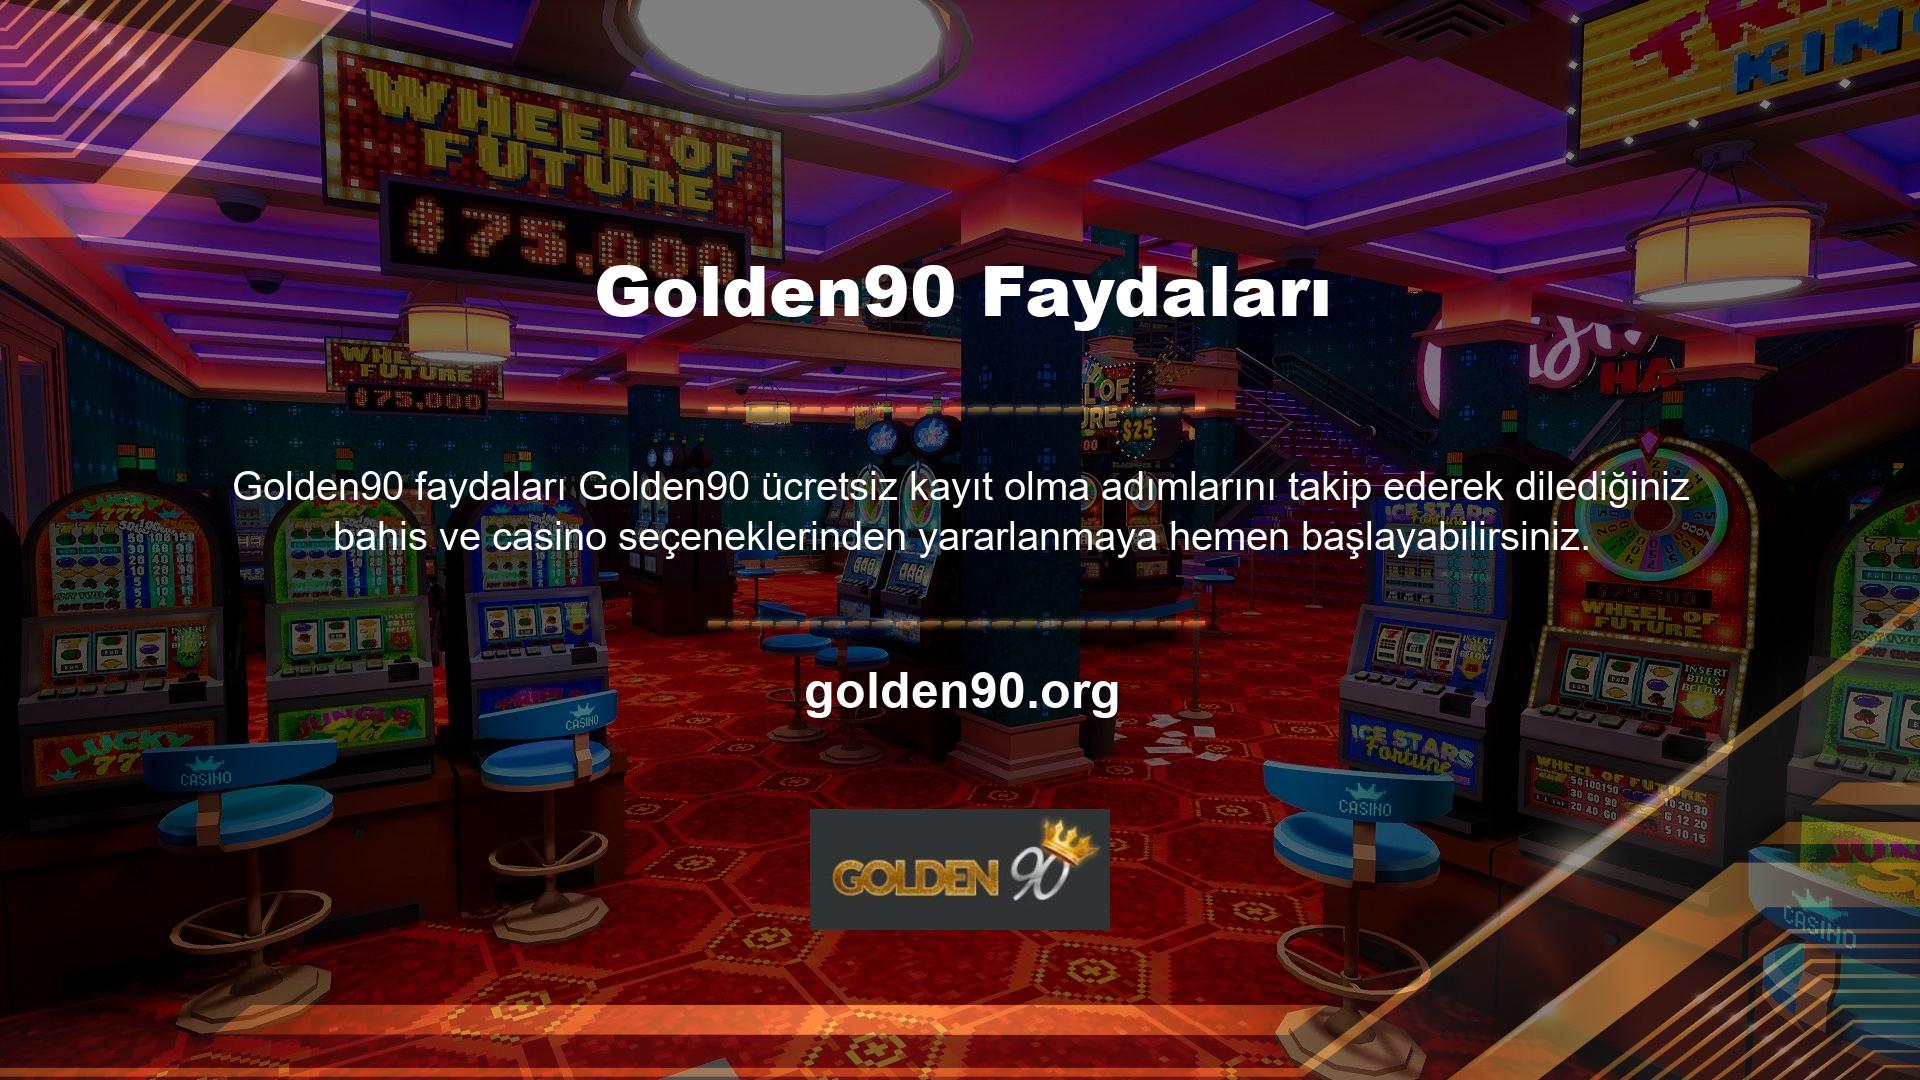 Golden90, spor bahislerinden canlı bahislere, casino seçeneklerinden slotlara kadar geniş bir oyun yelpazesi sunmaktadır